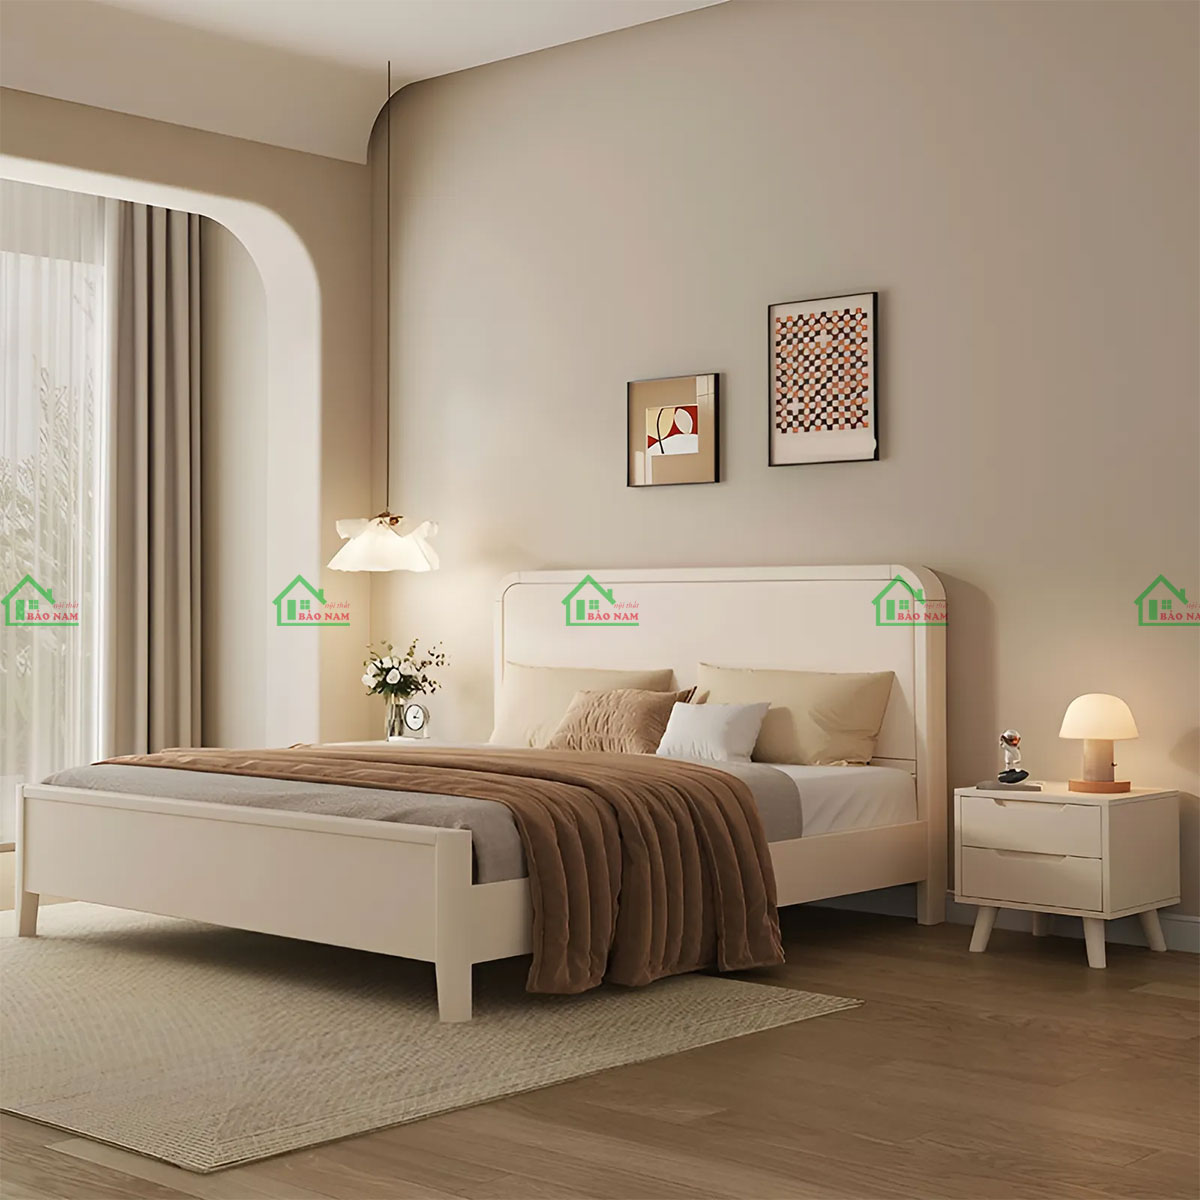 Giường ngủ gỗ tự nhiên hiện đại sơn màu đơn sắc